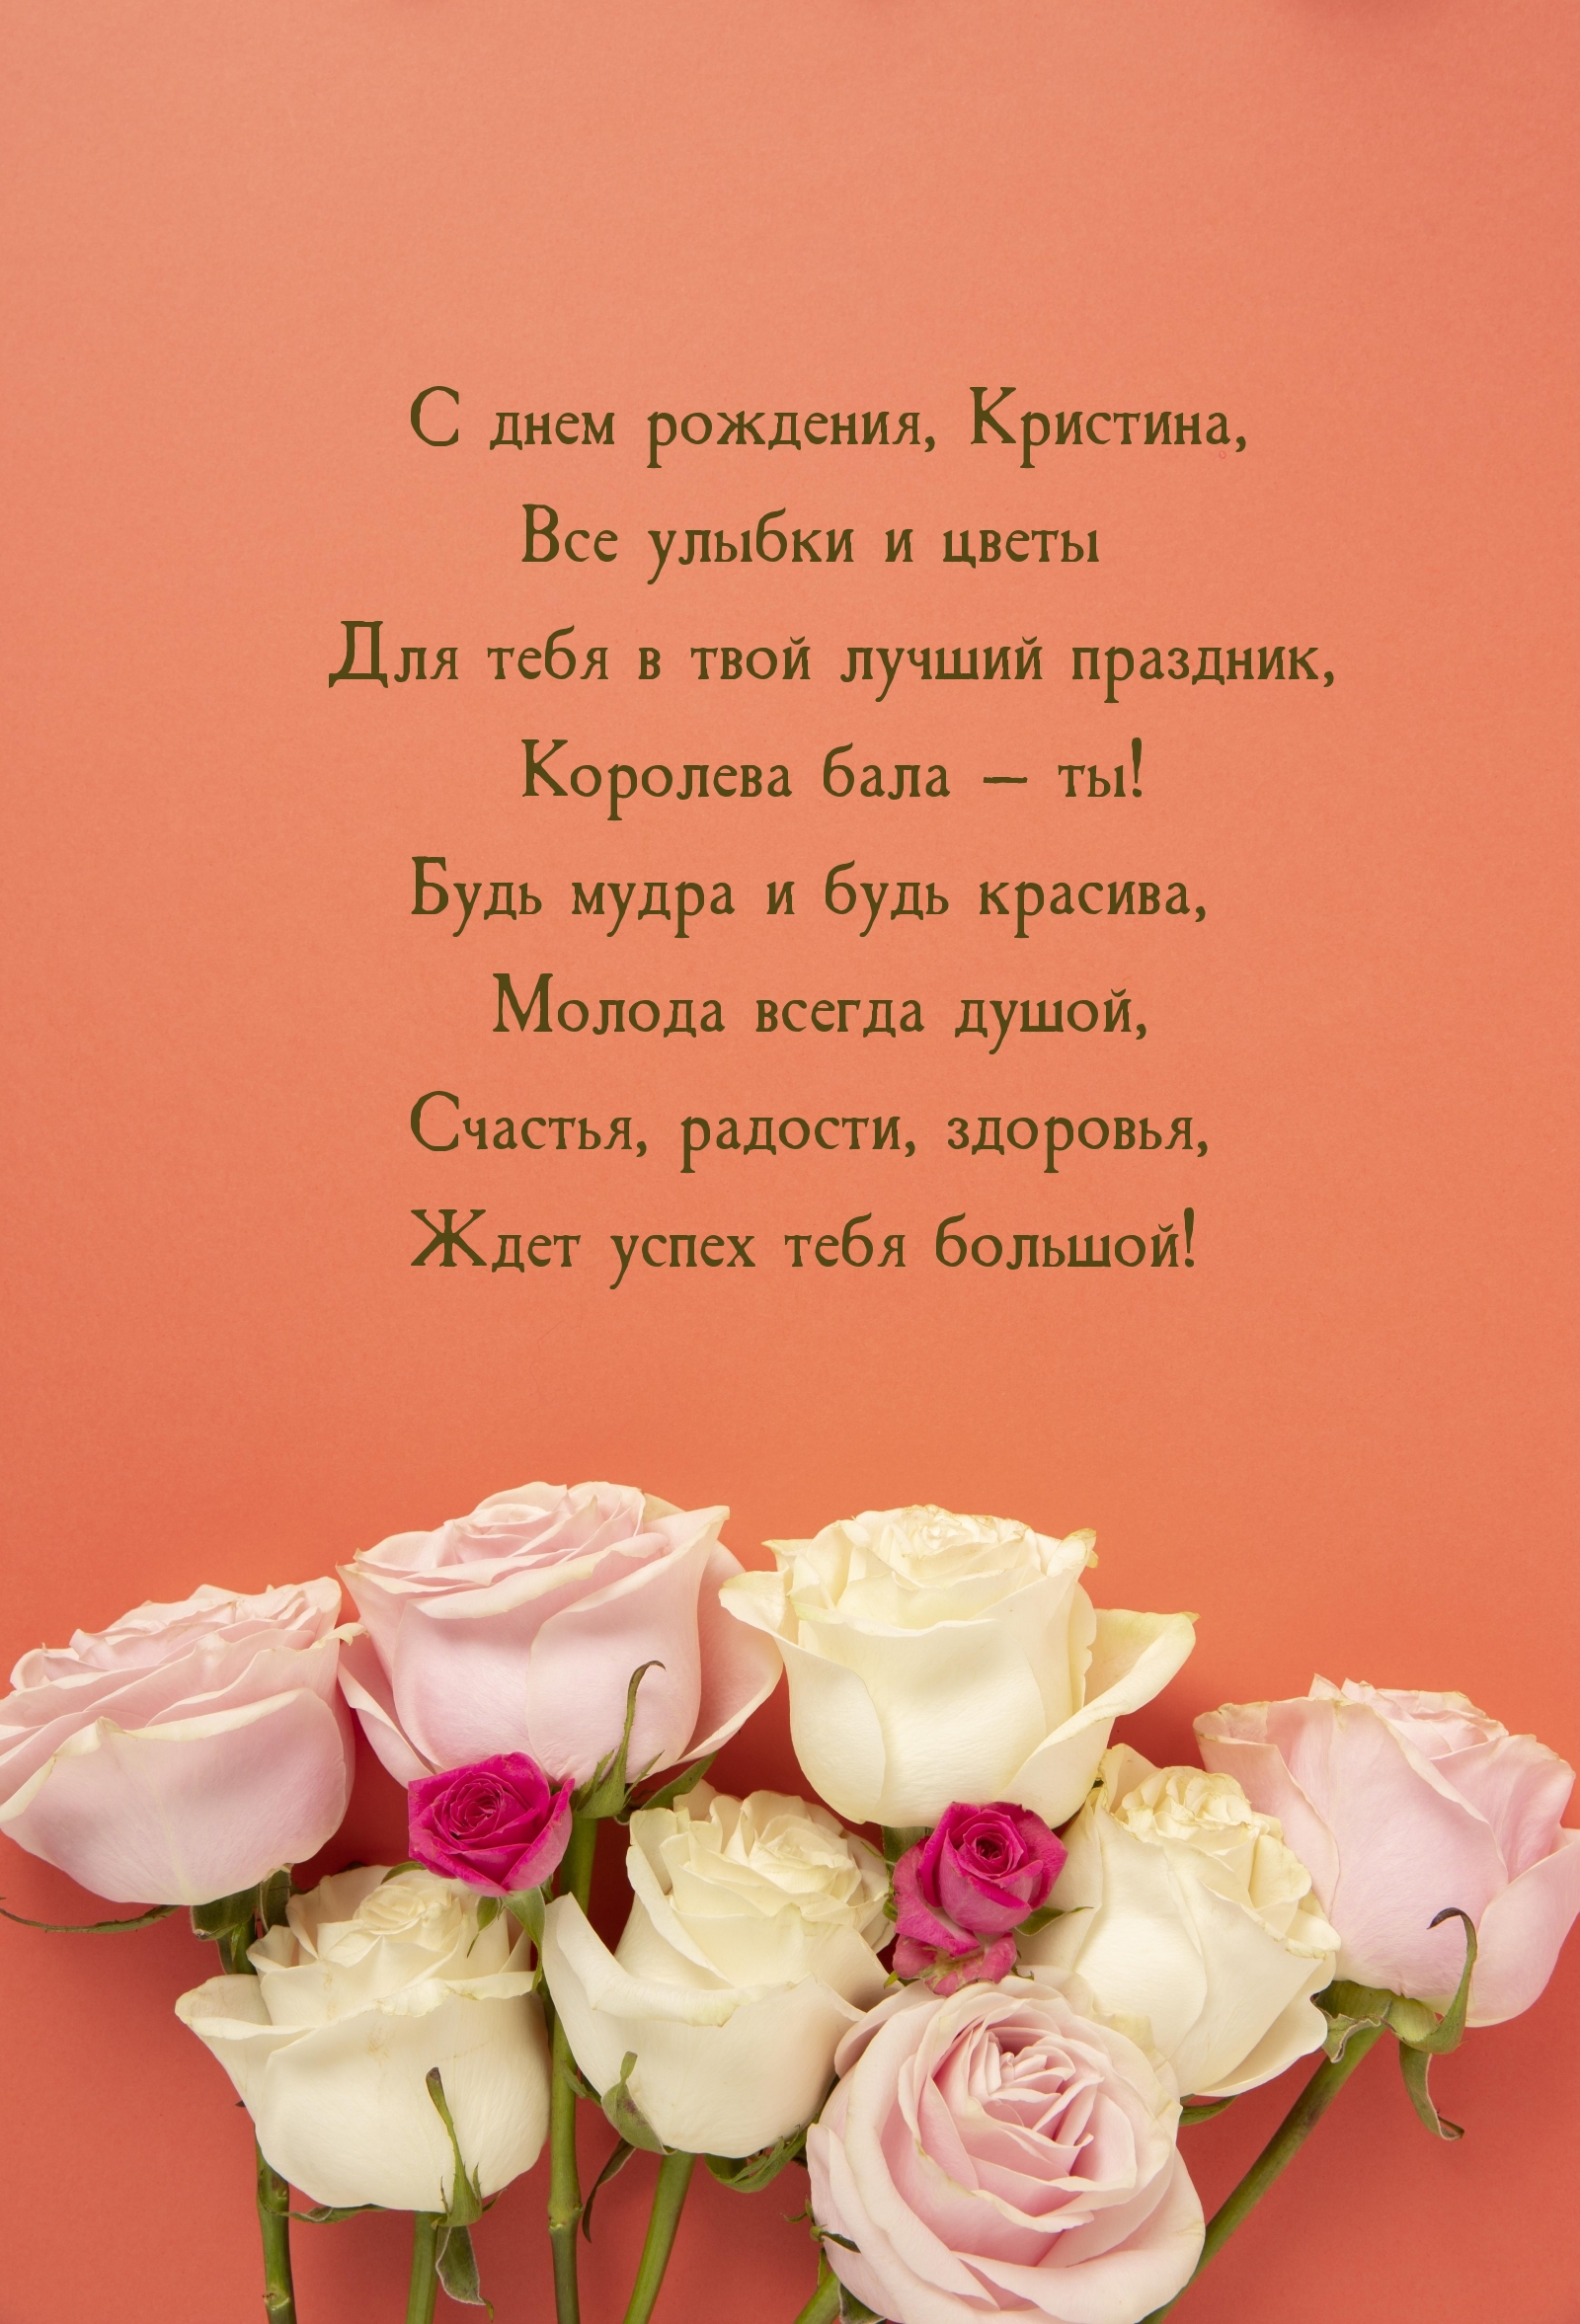 С днем рождения, Кристина, все улыбки и цветы для тебя